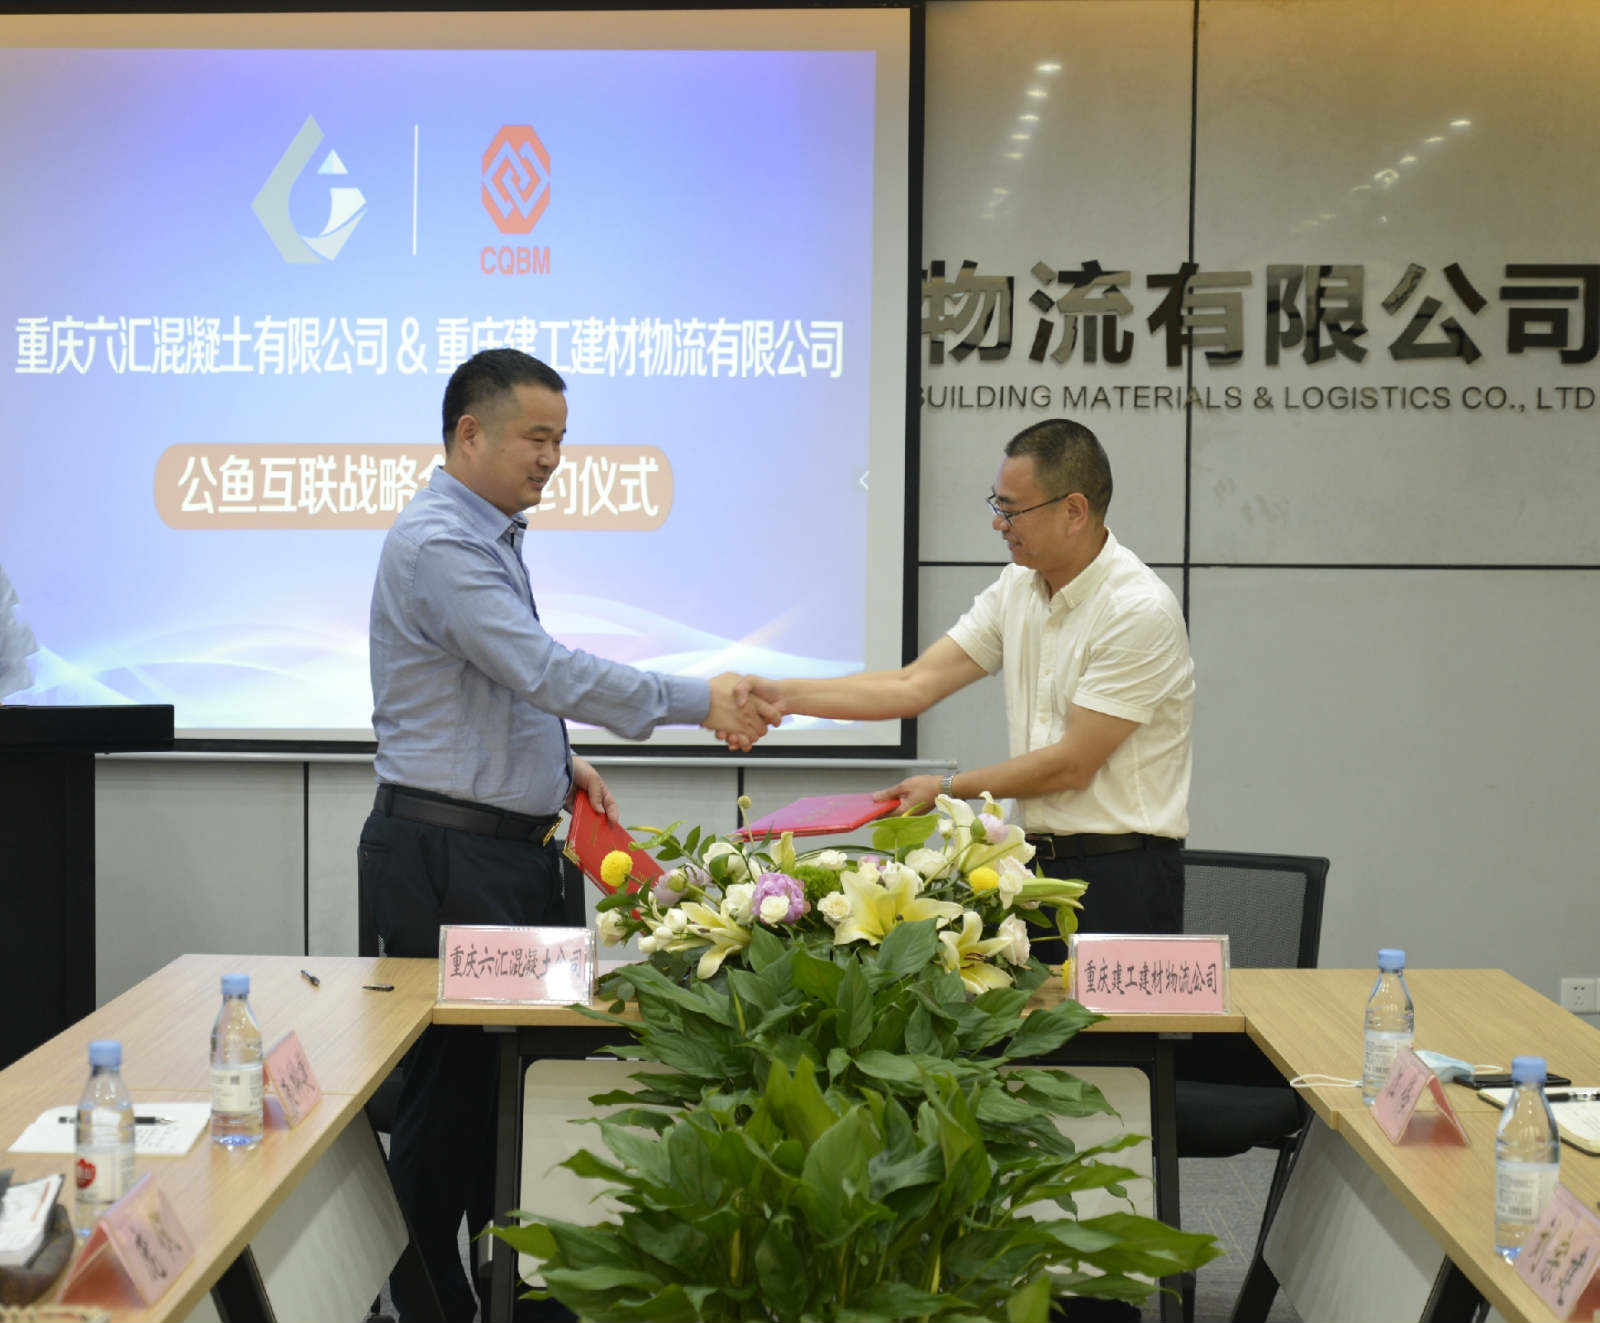 重庆建工建材物流有限公司与重庆六汇混凝土有限公司签署战略合作协议